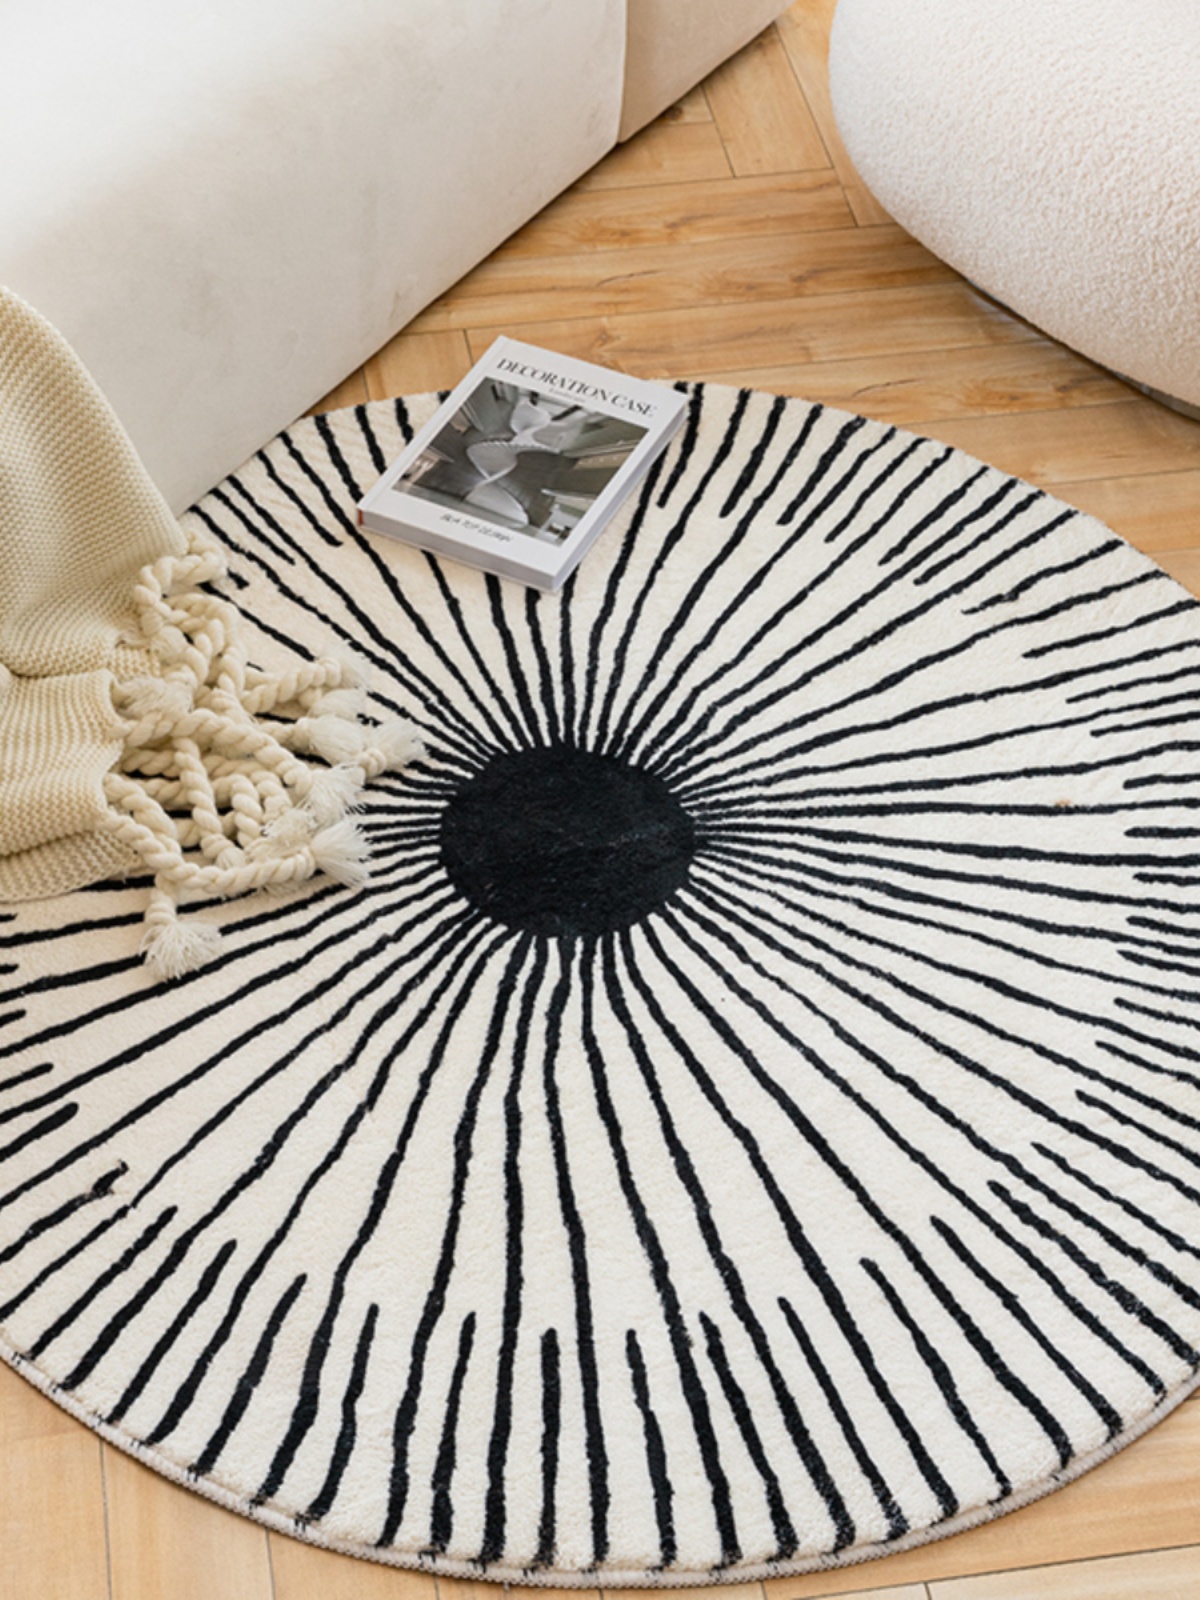 簡約現代風格圓形地毯防滑適合客廳臥室床邊多種尺寸和顏色可選